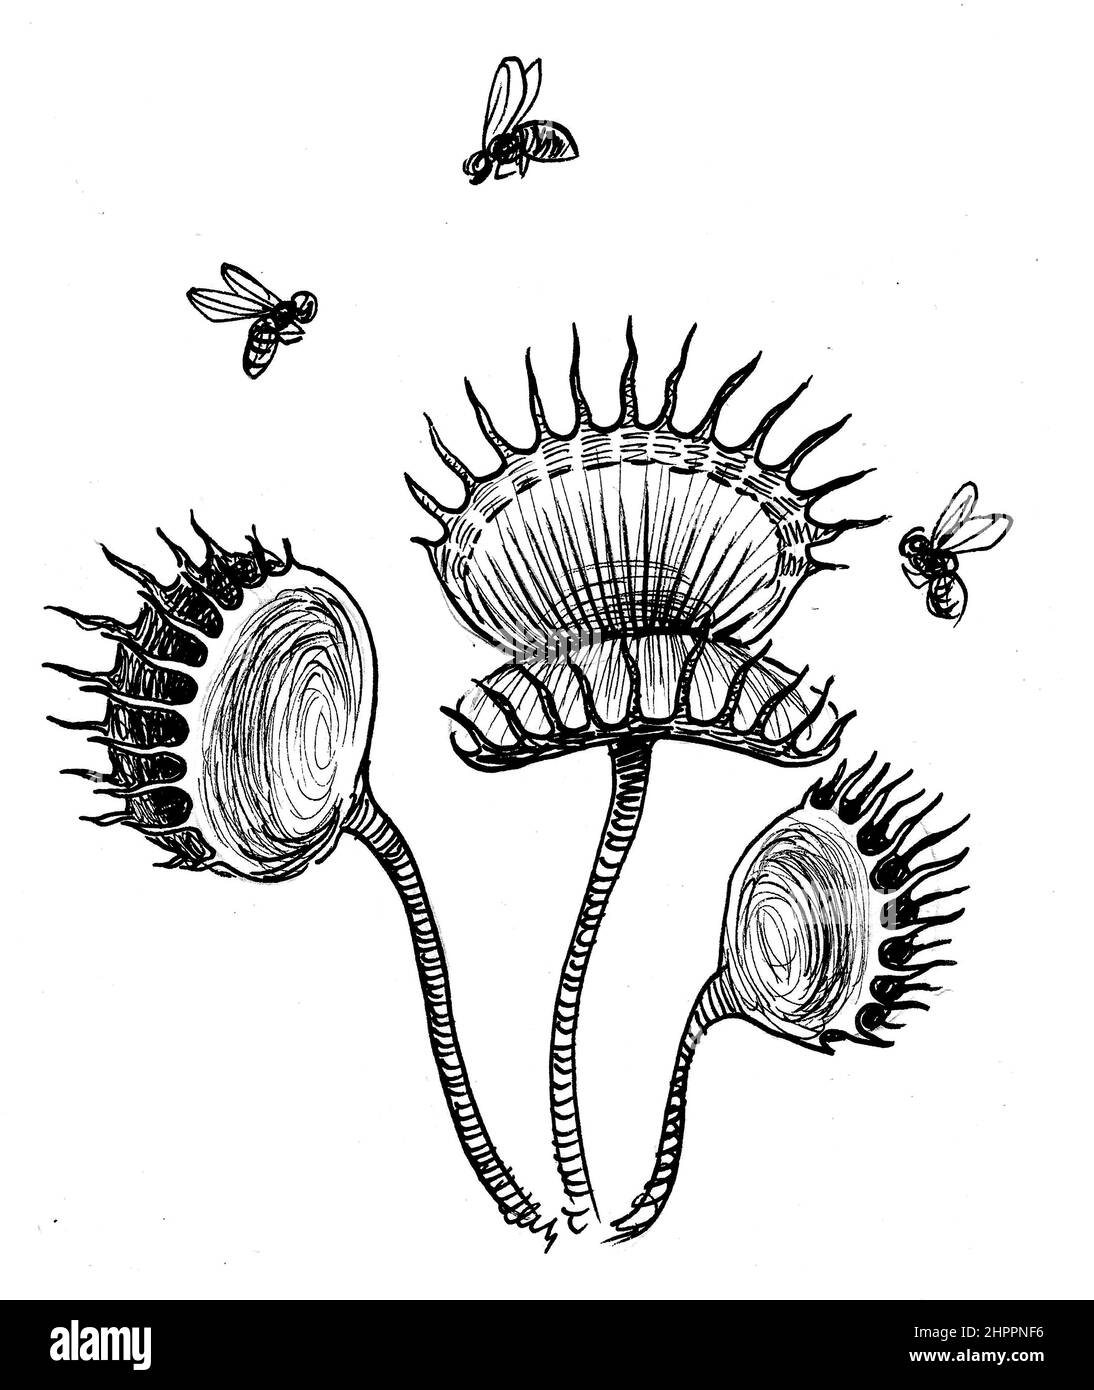 Fleischfressende Pflanze und fliegende Fliegen. Tinte schwarz-weiß  Zeichnung Stockfotografie - Alamy